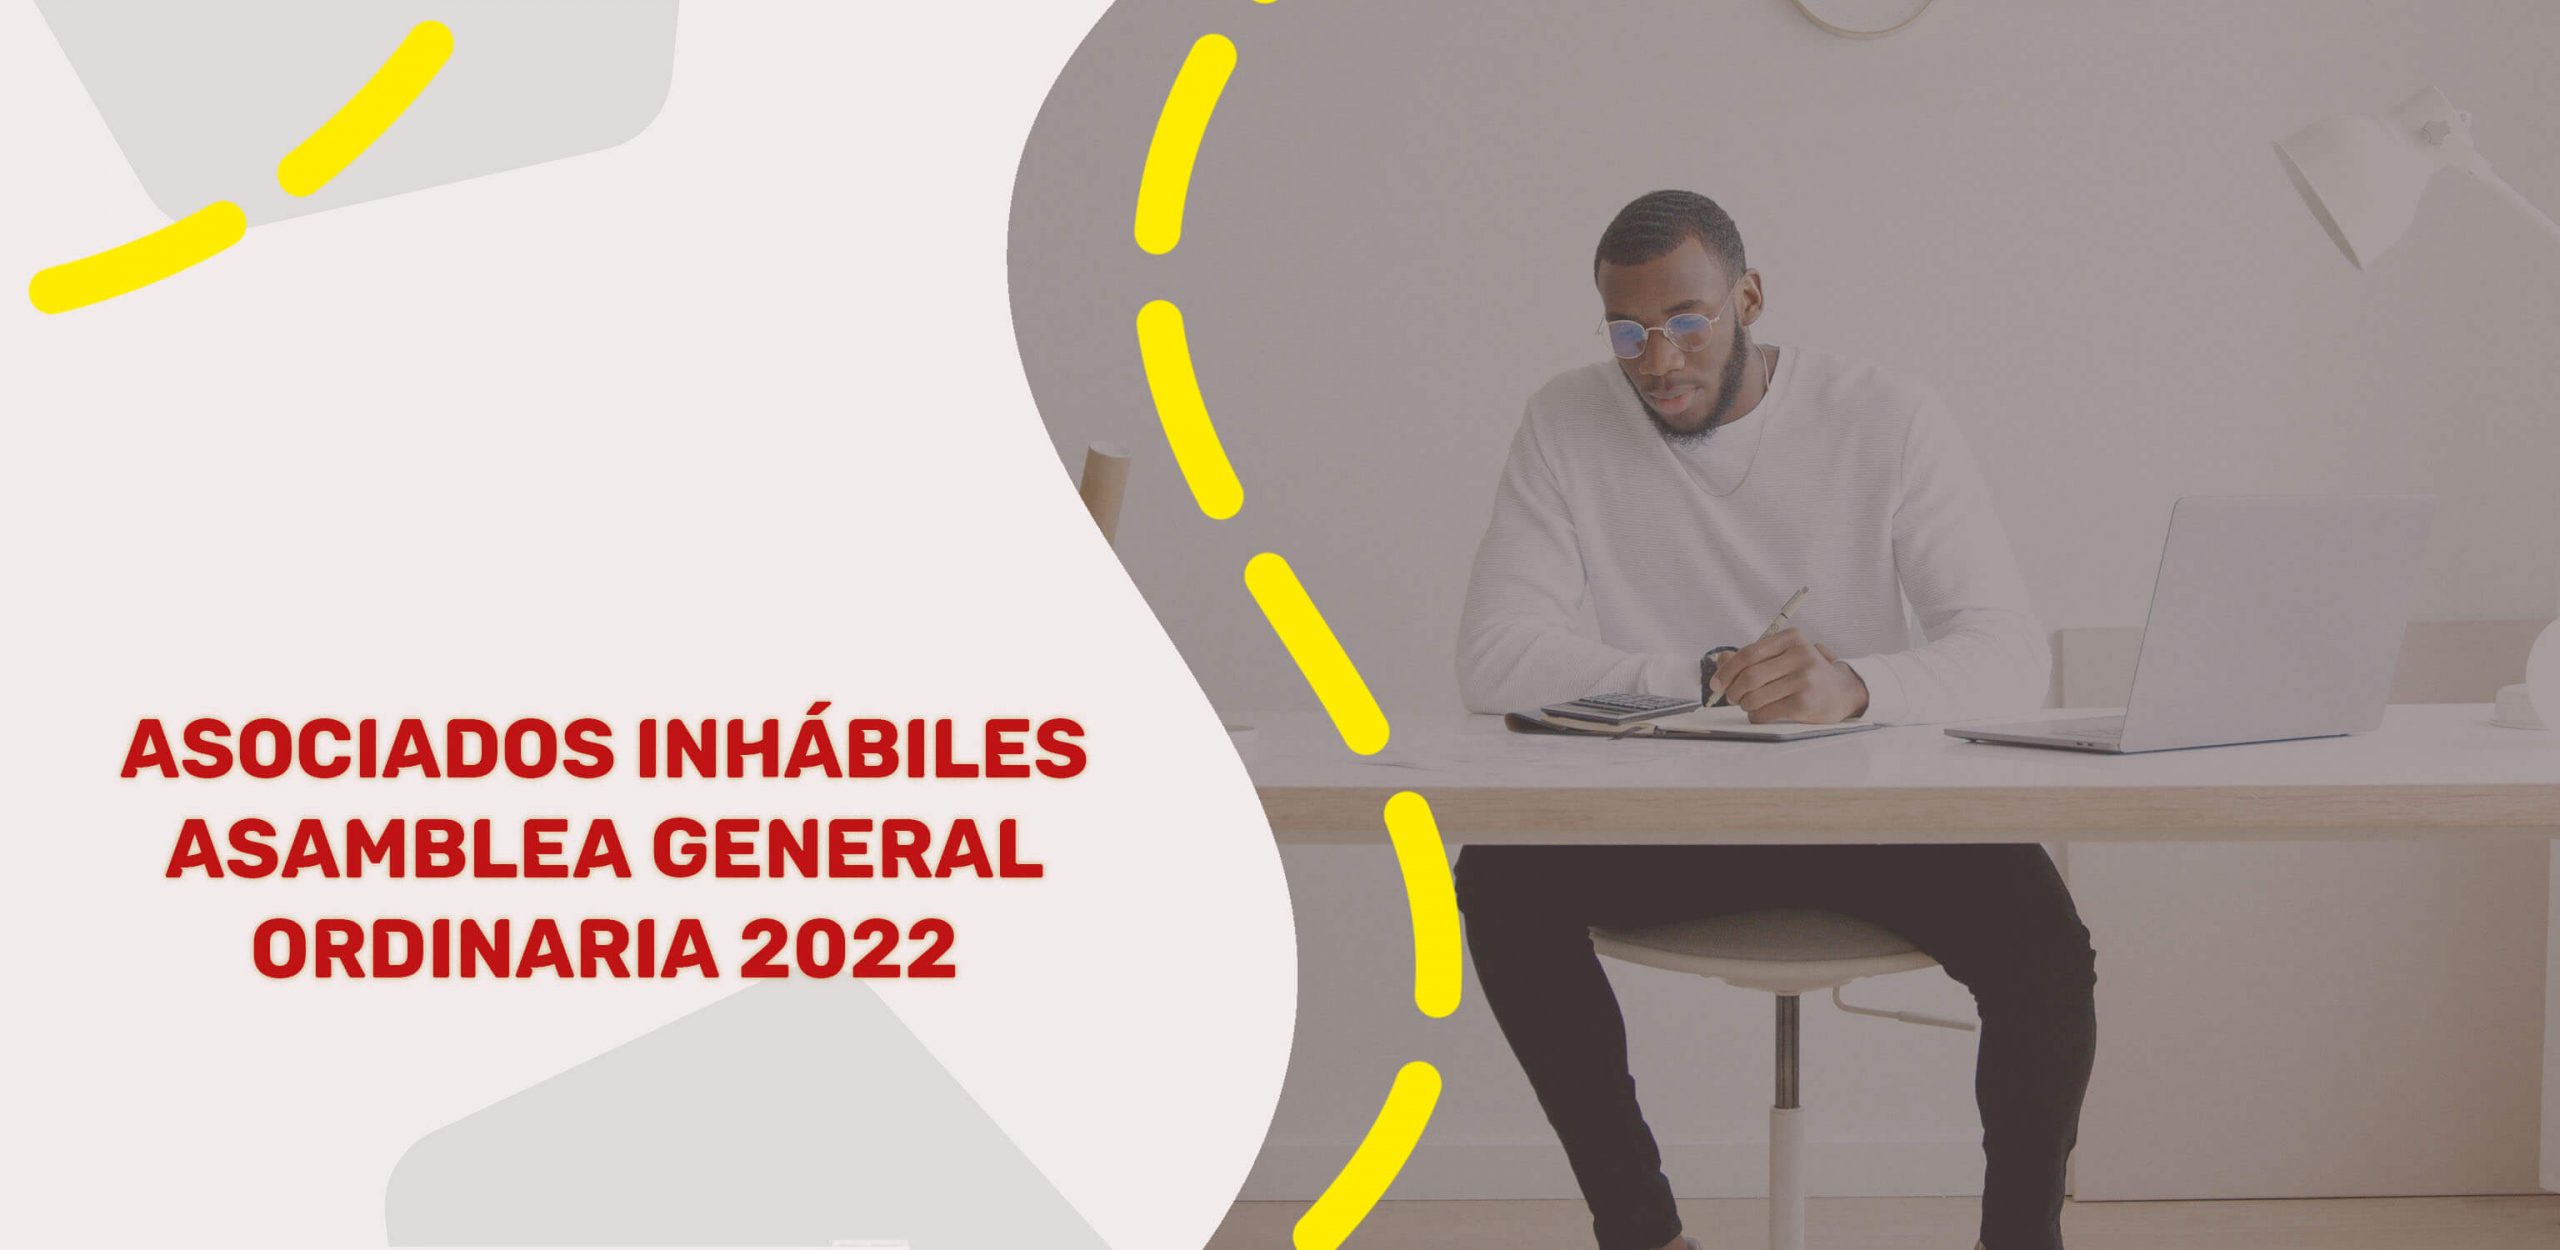 Asociados Inhabiles Asamblea 2022